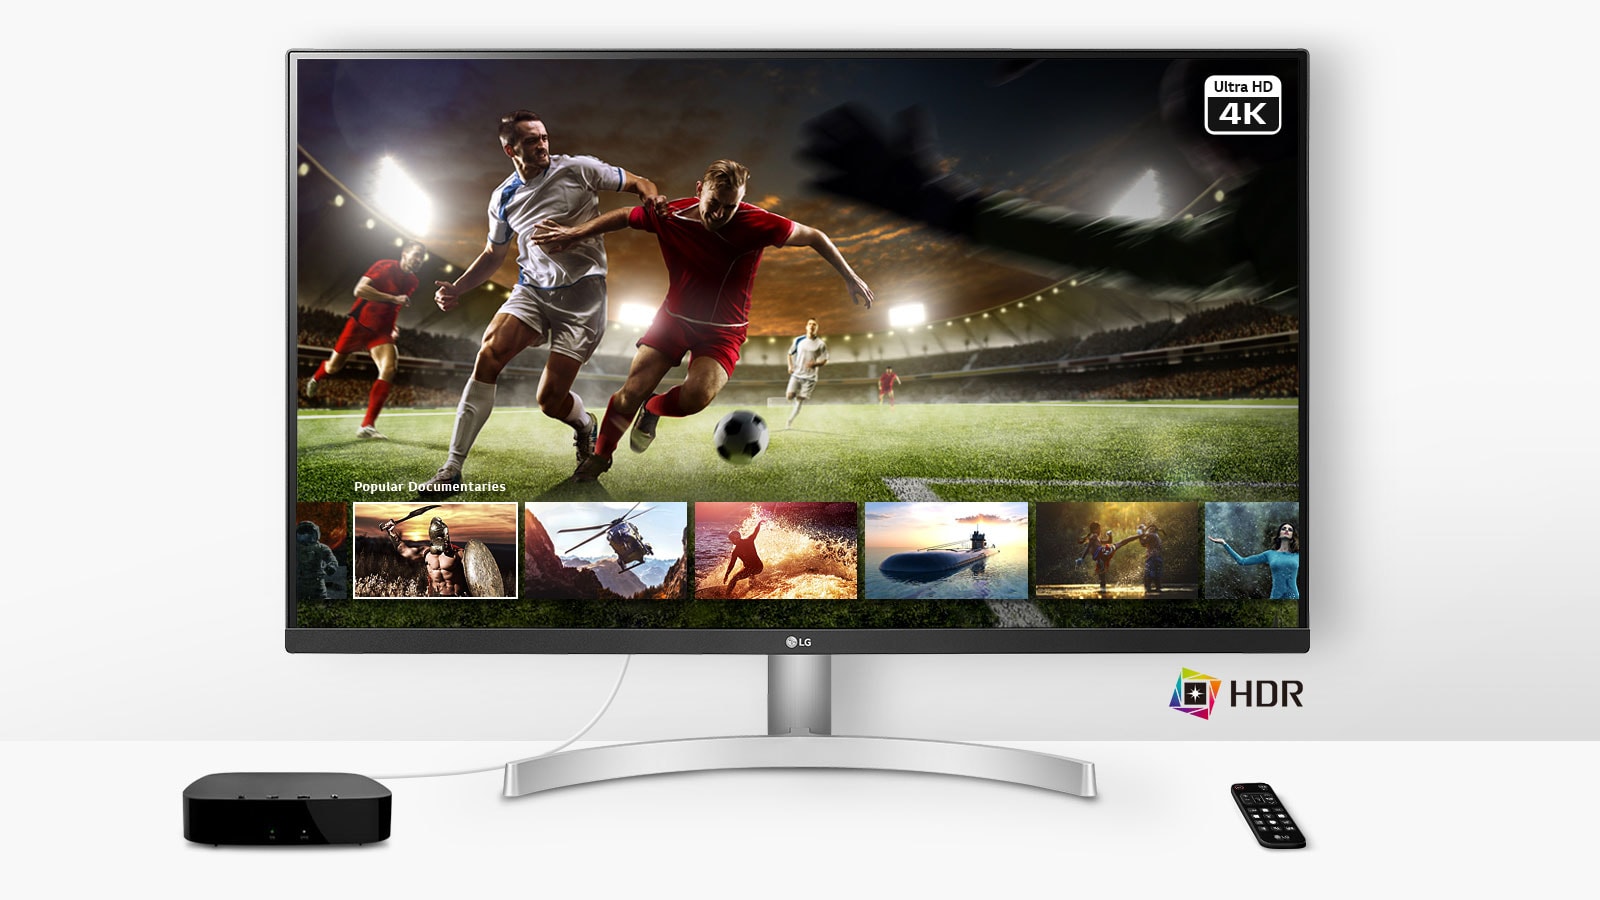 Jugar un partido de fútbol en vivo en Ultra HD 4K HDR desde el servicio de streaming